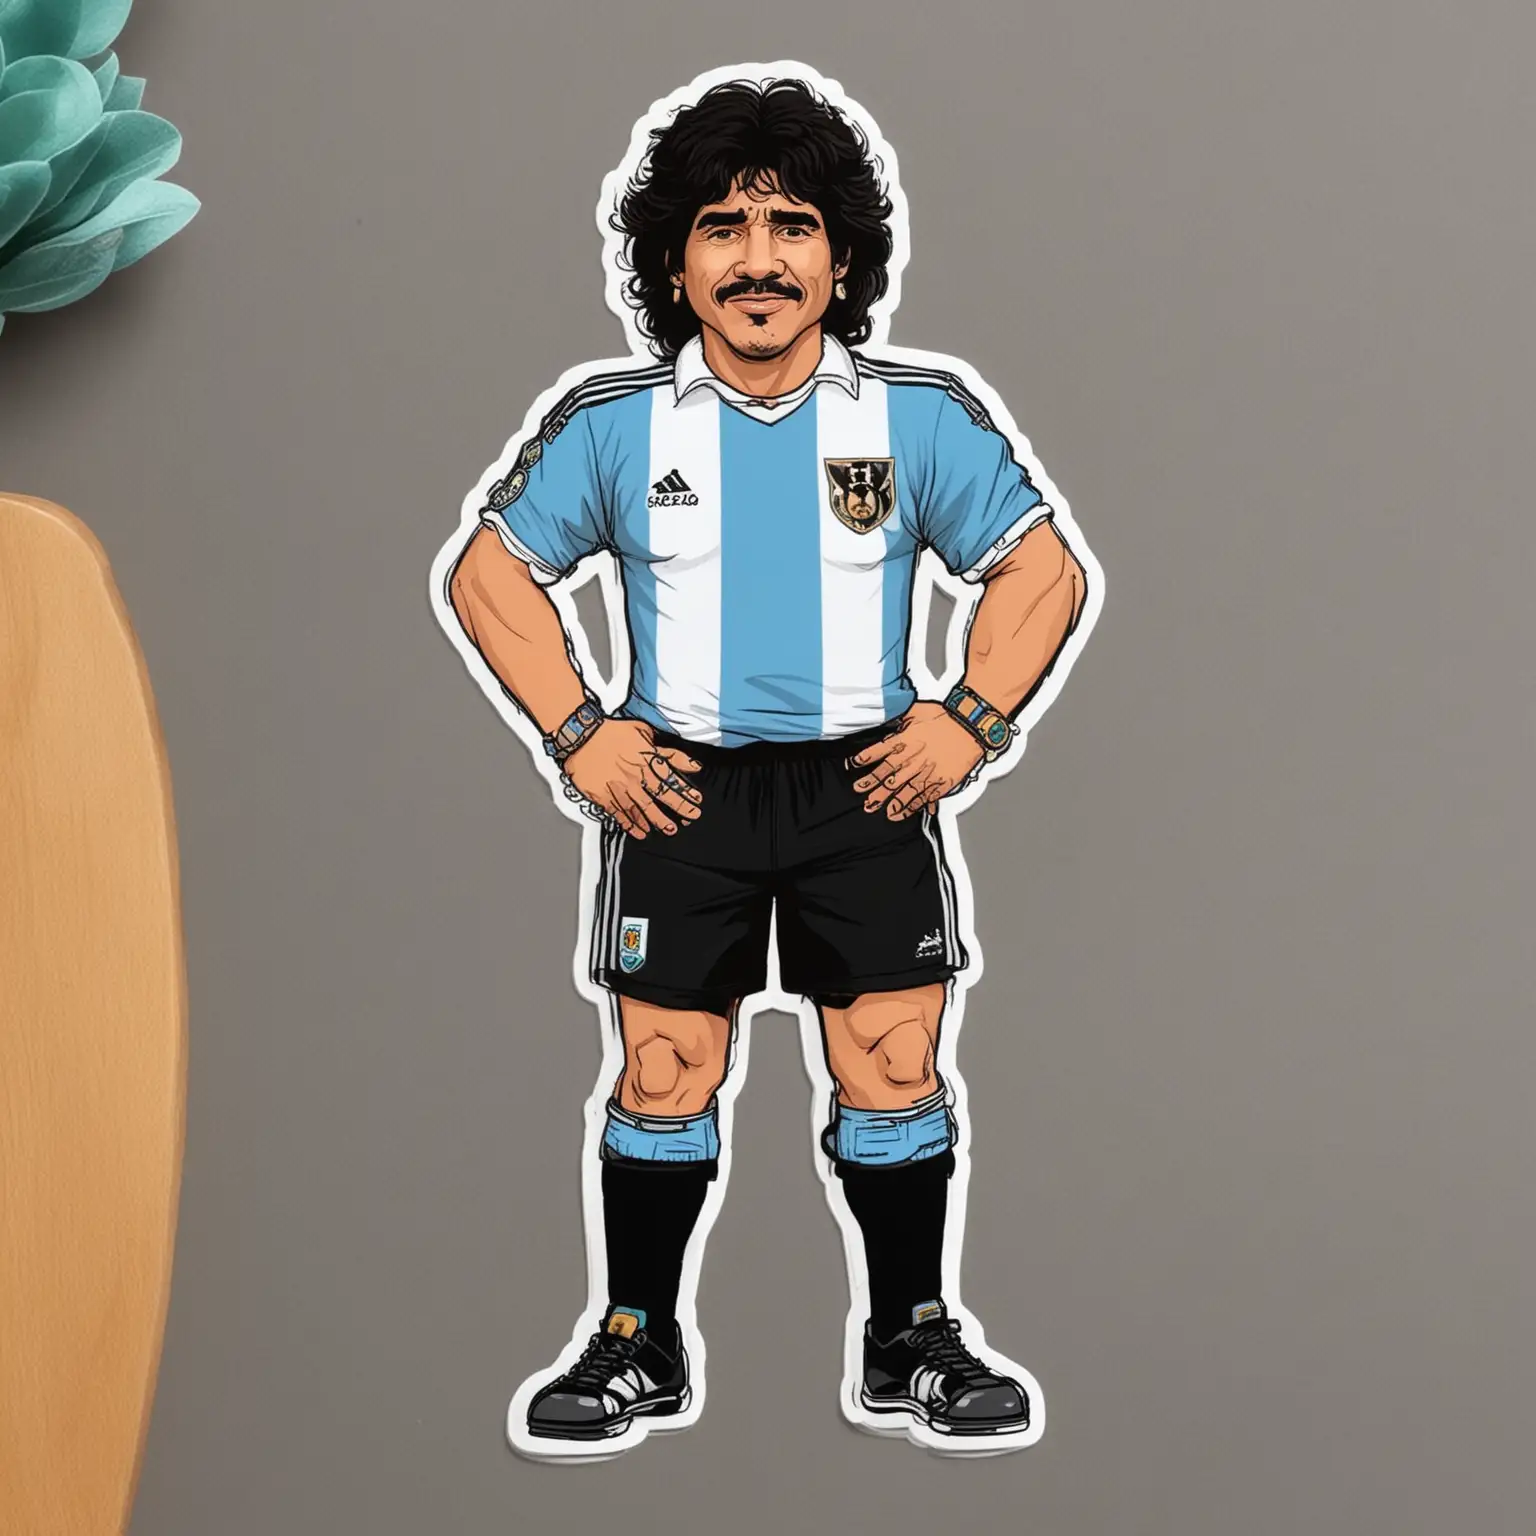 Maradona cartoon sticker style show full body
